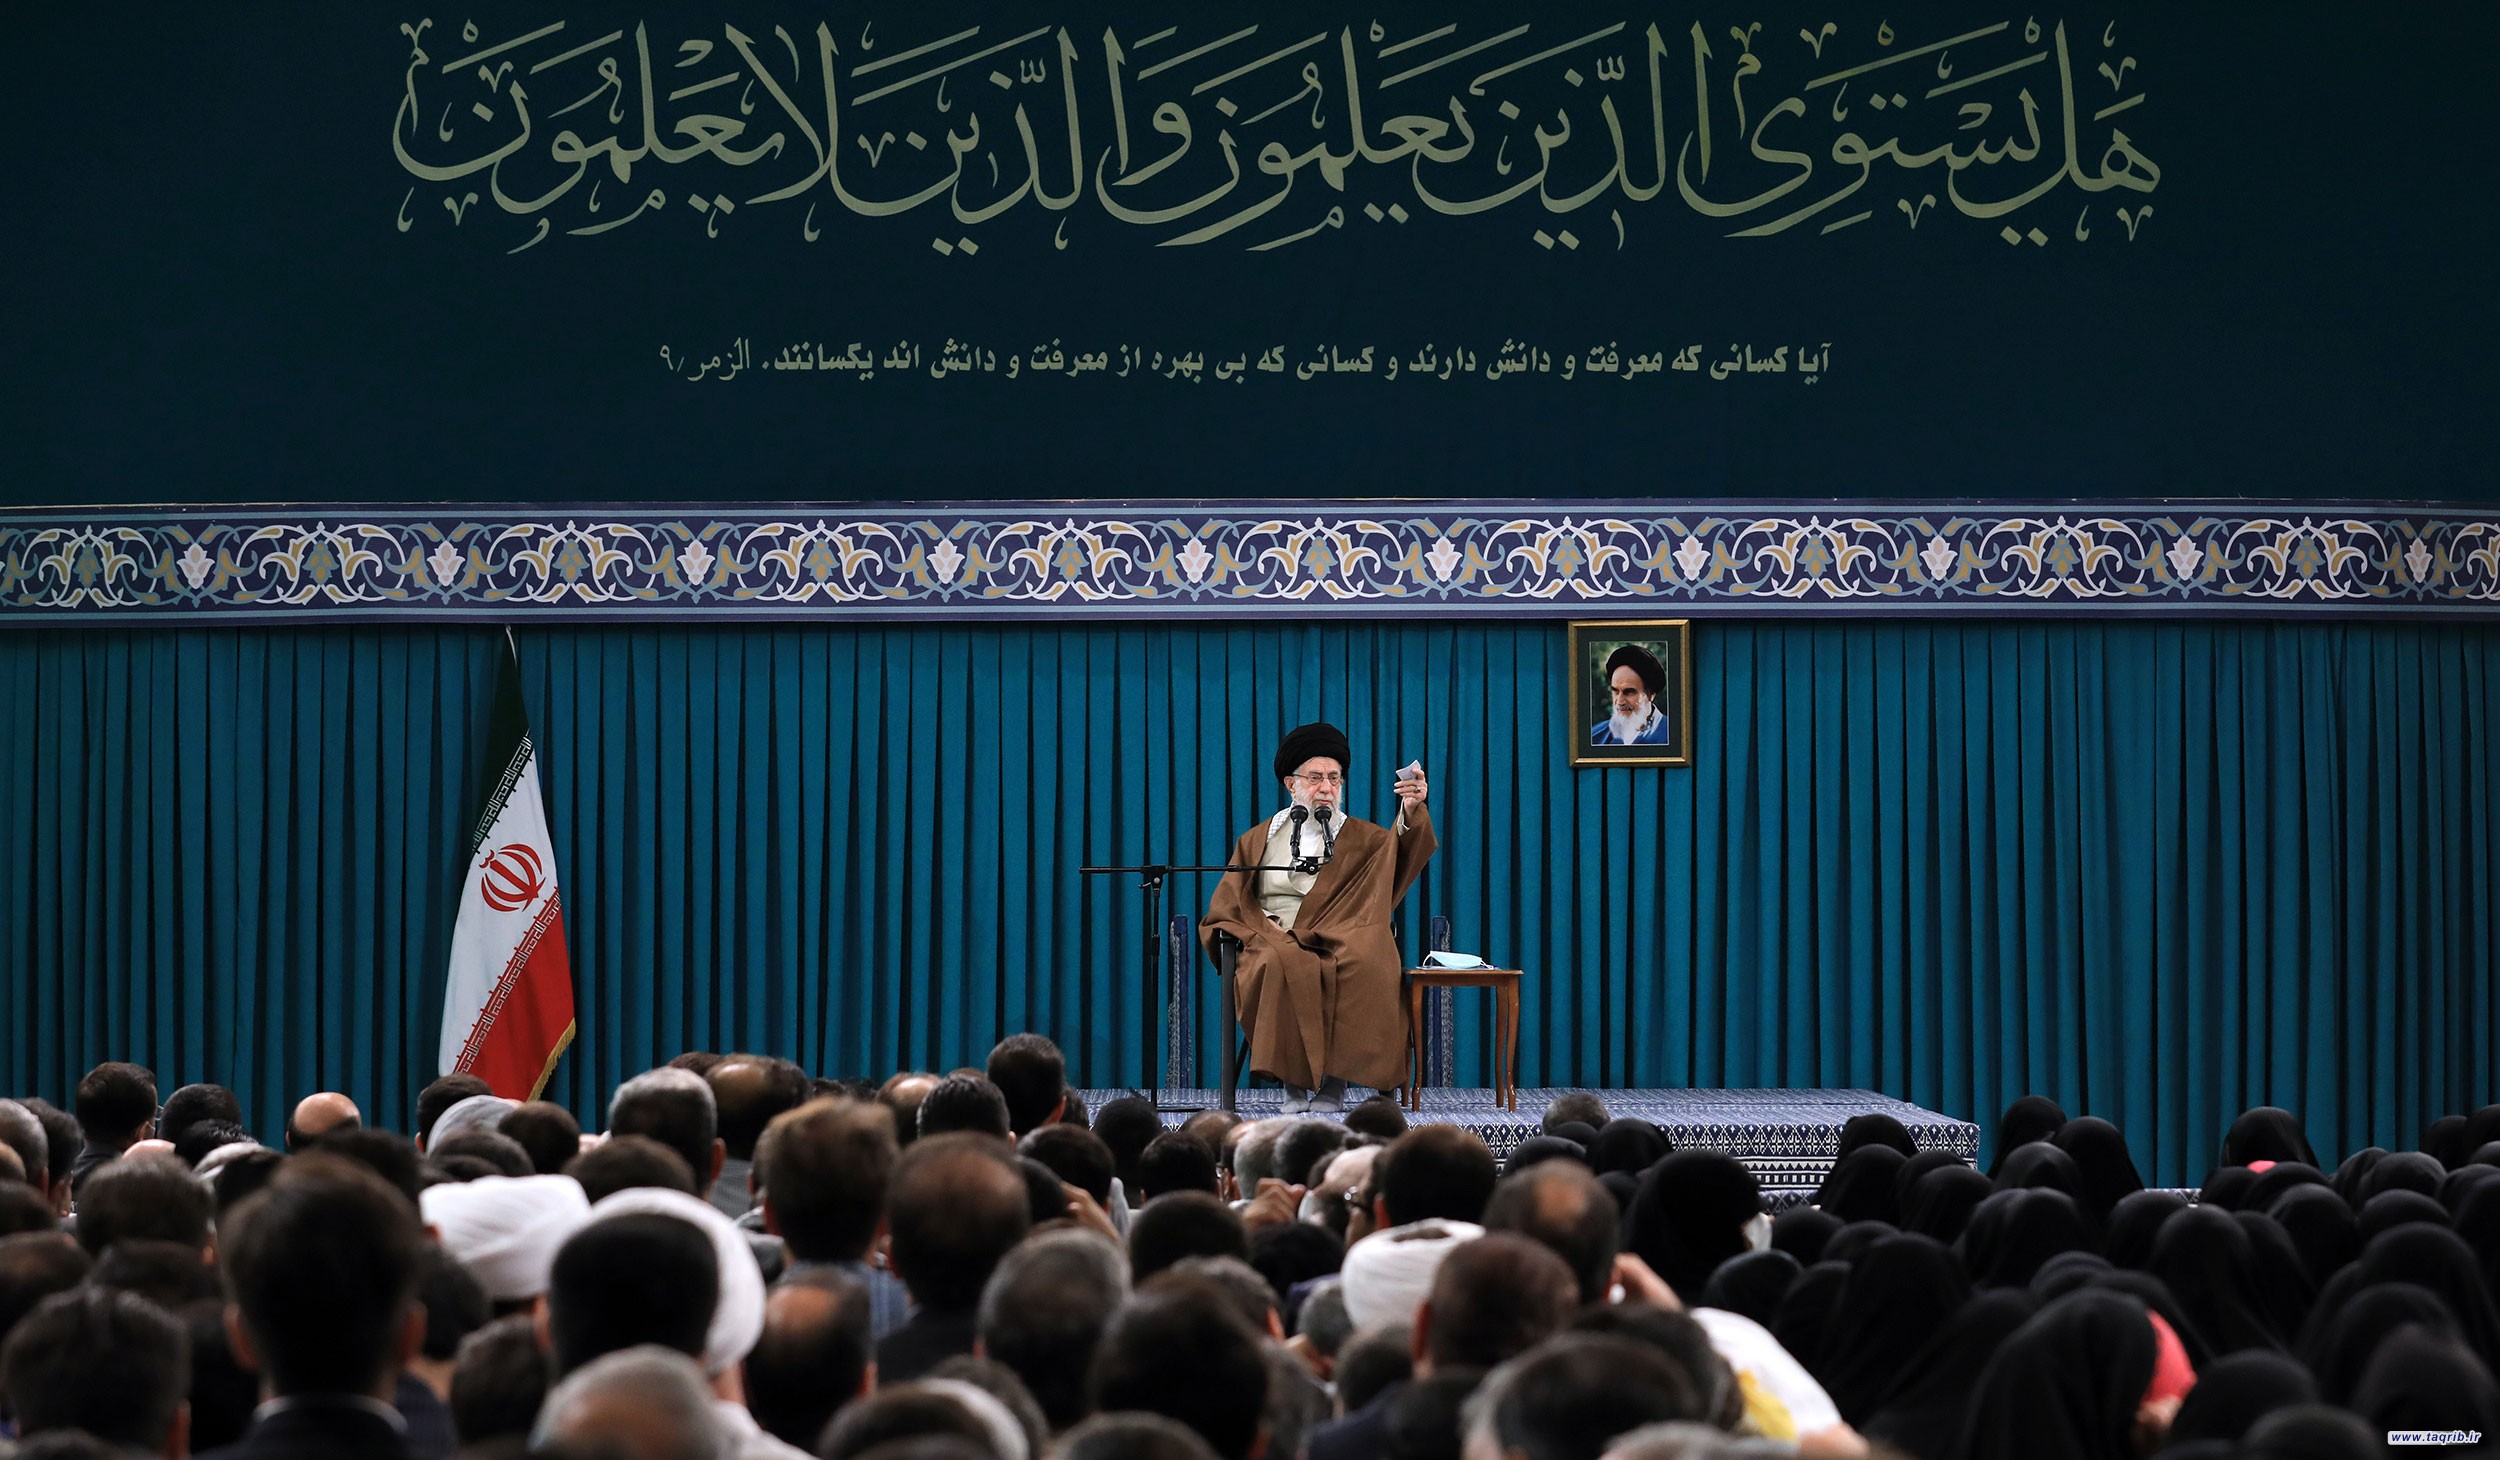 بیانات رهبر معظم انقلاب اسلامی در دیدار معلمان و فرهنگیان سراسر کشور